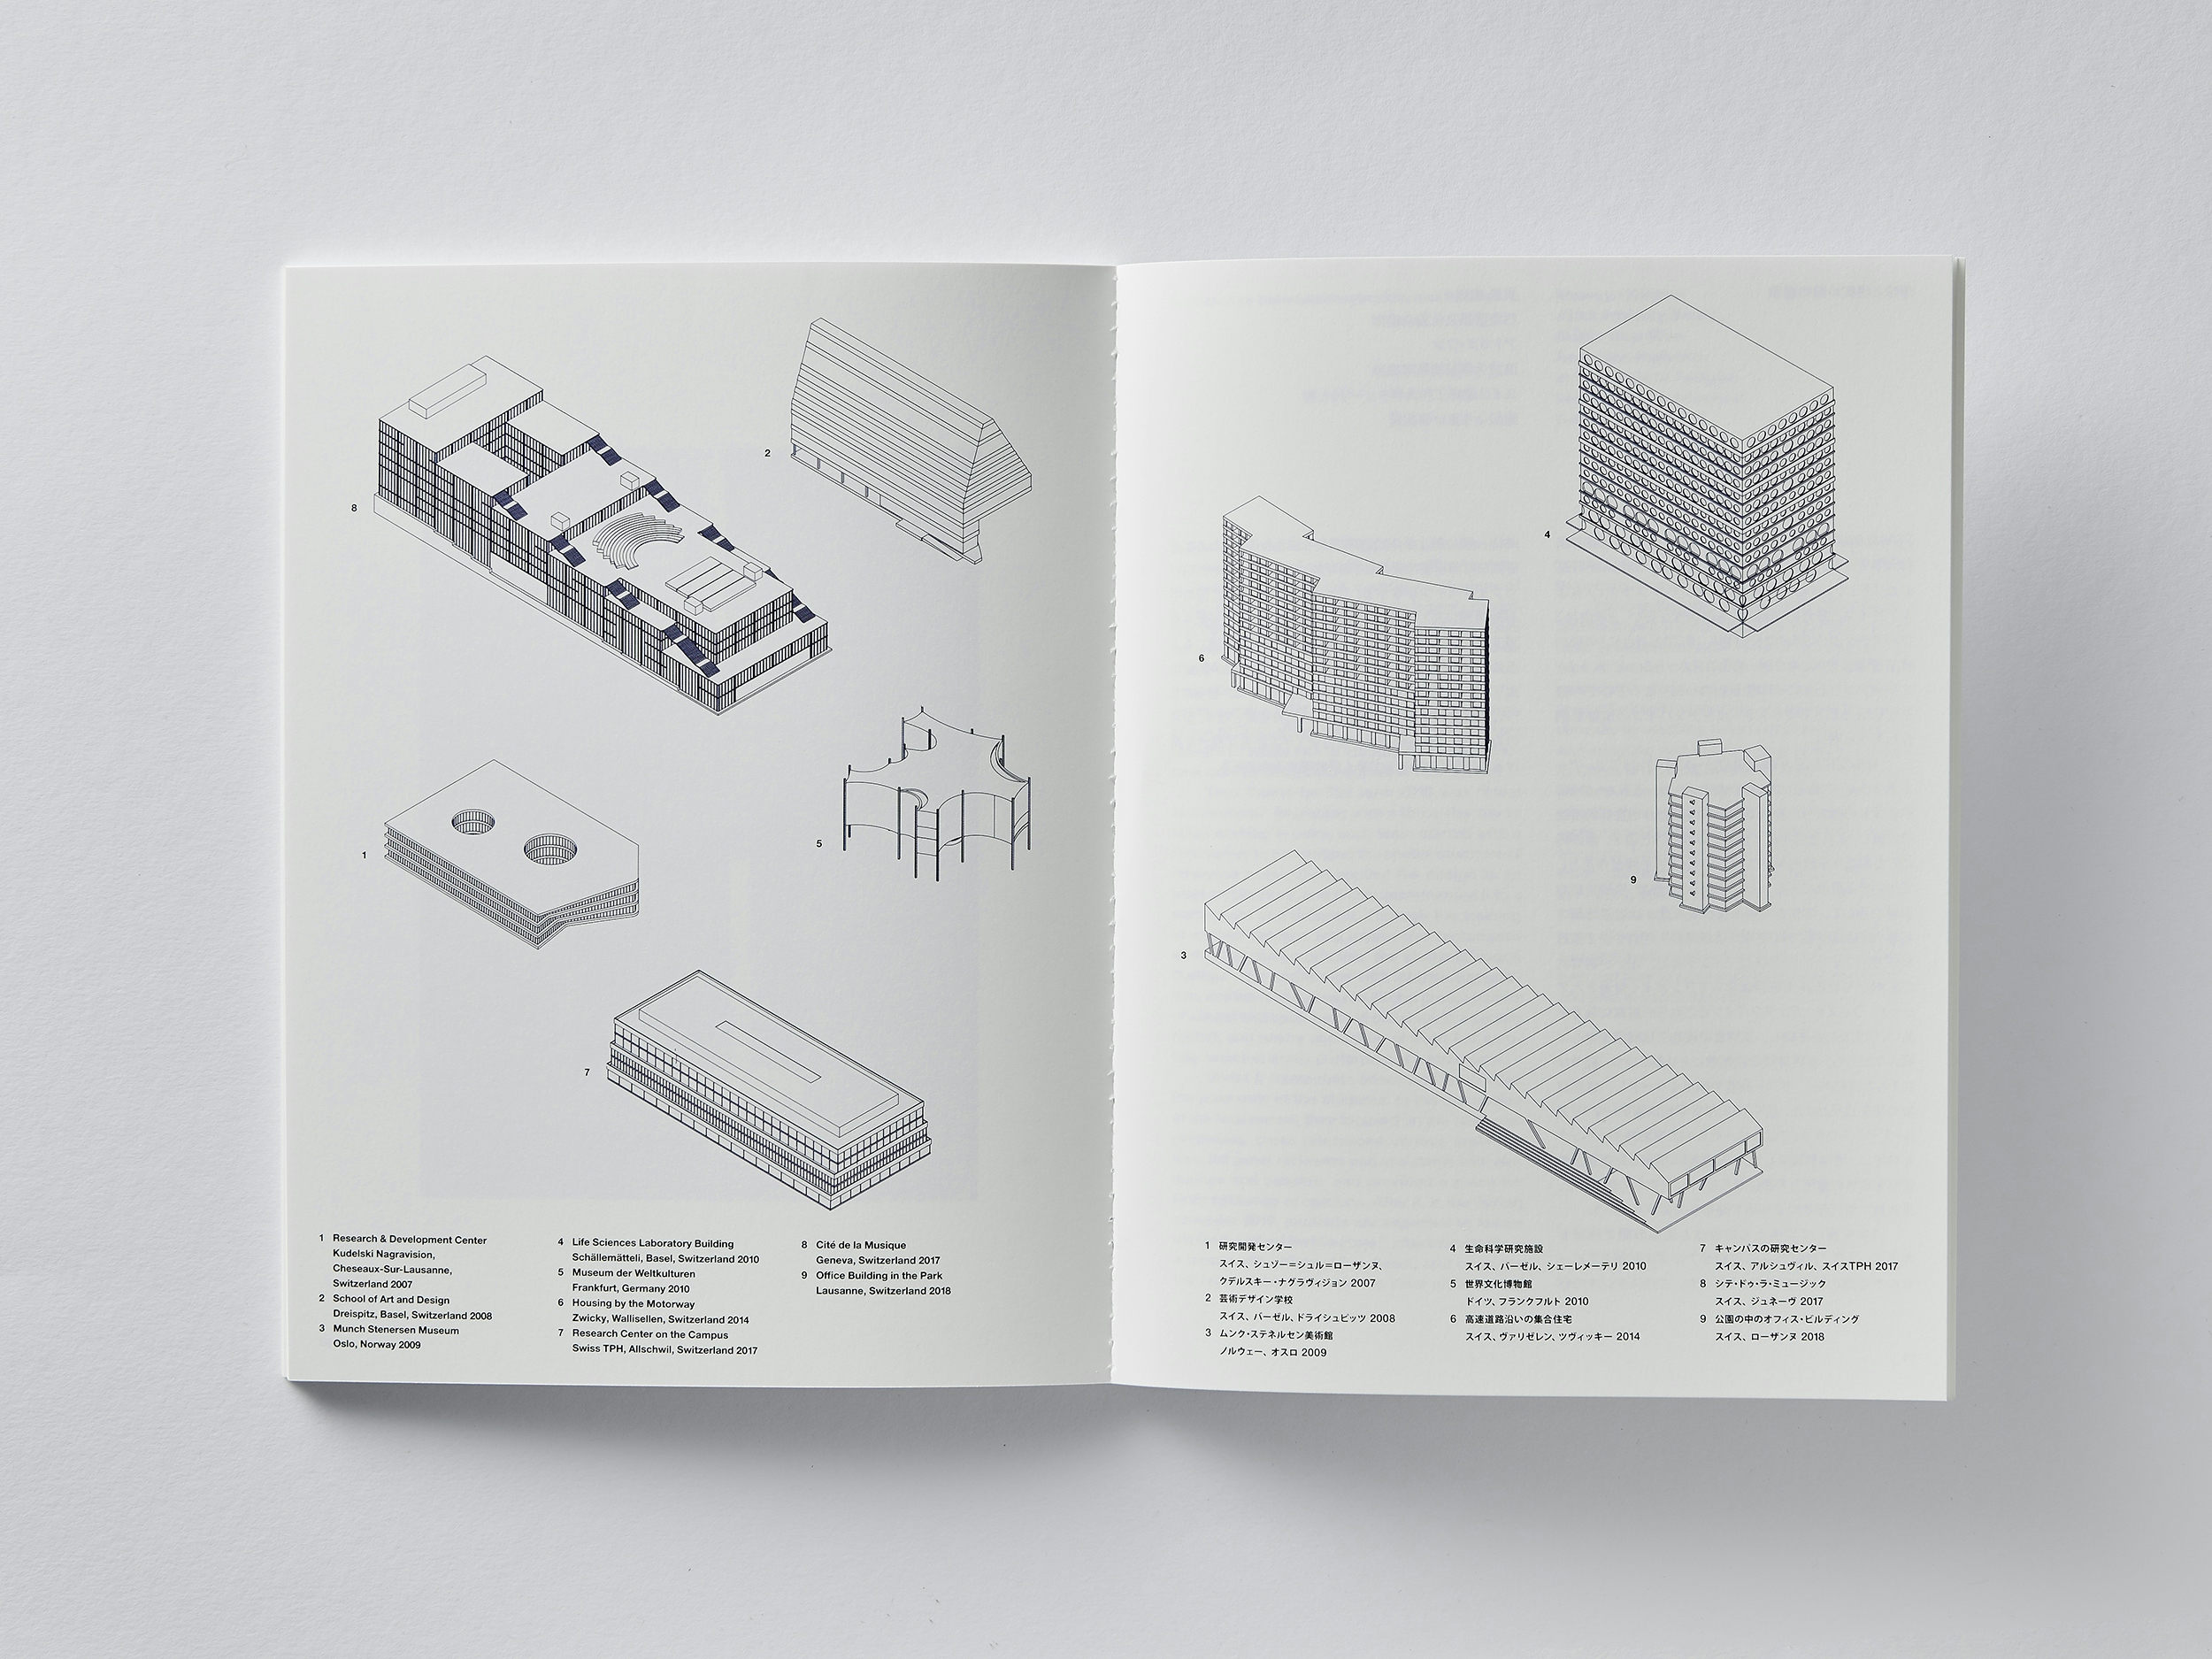 Christ & Gantenbein – The Last Act of Design booklet spread